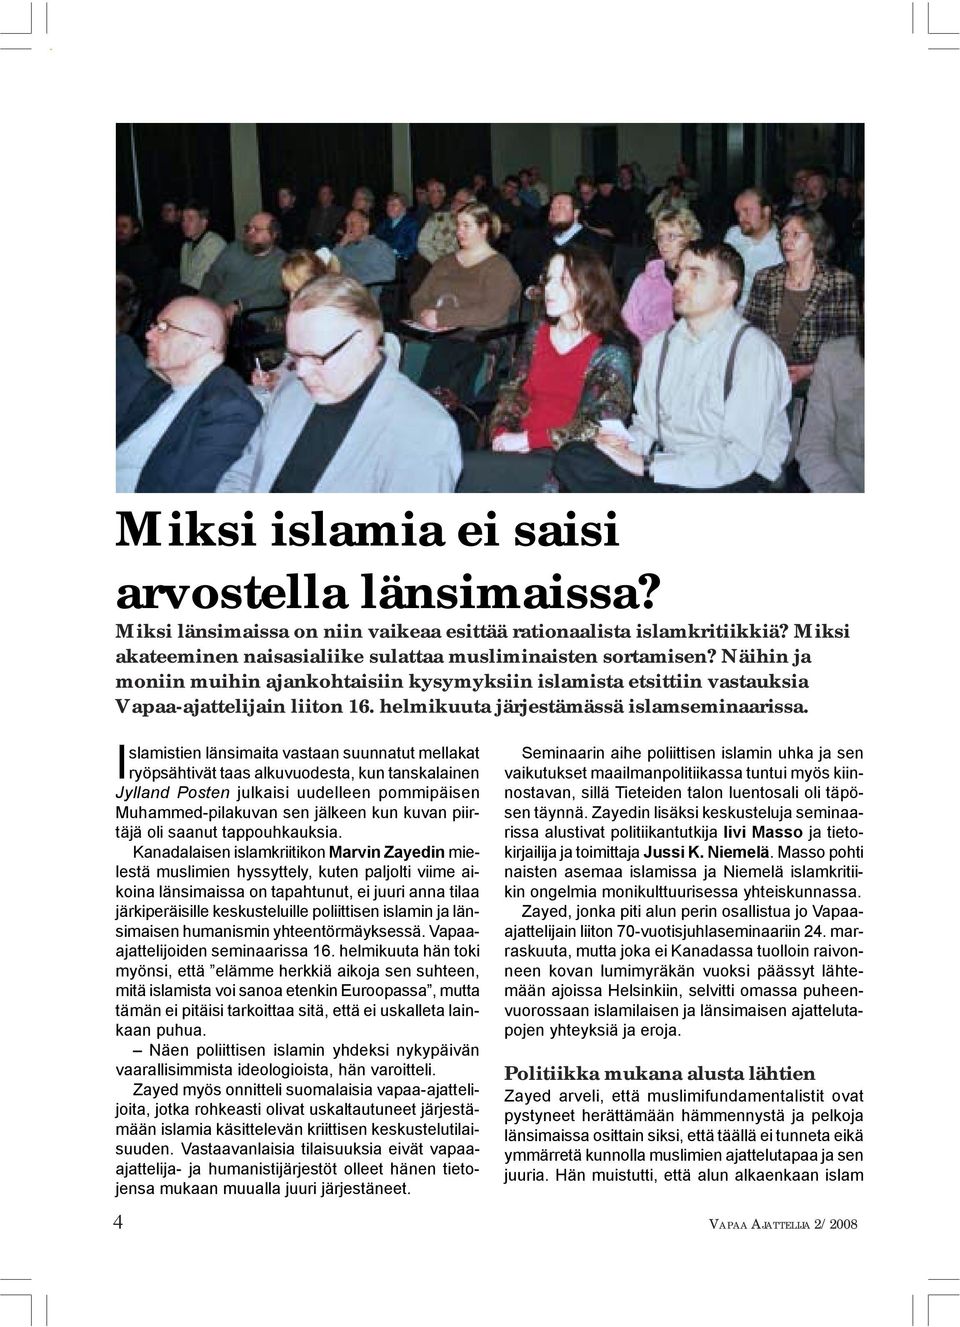 Islamistien länsimaita vastaan suunnatut mellakat ryöpsähtivät taas alkuvuodesta, kun tanskalainen Jylland Posten julkaisi uudelleen pommipäisen Muhammed-pilakuvan sen jälkeen kun kuvan piirtäjä oli